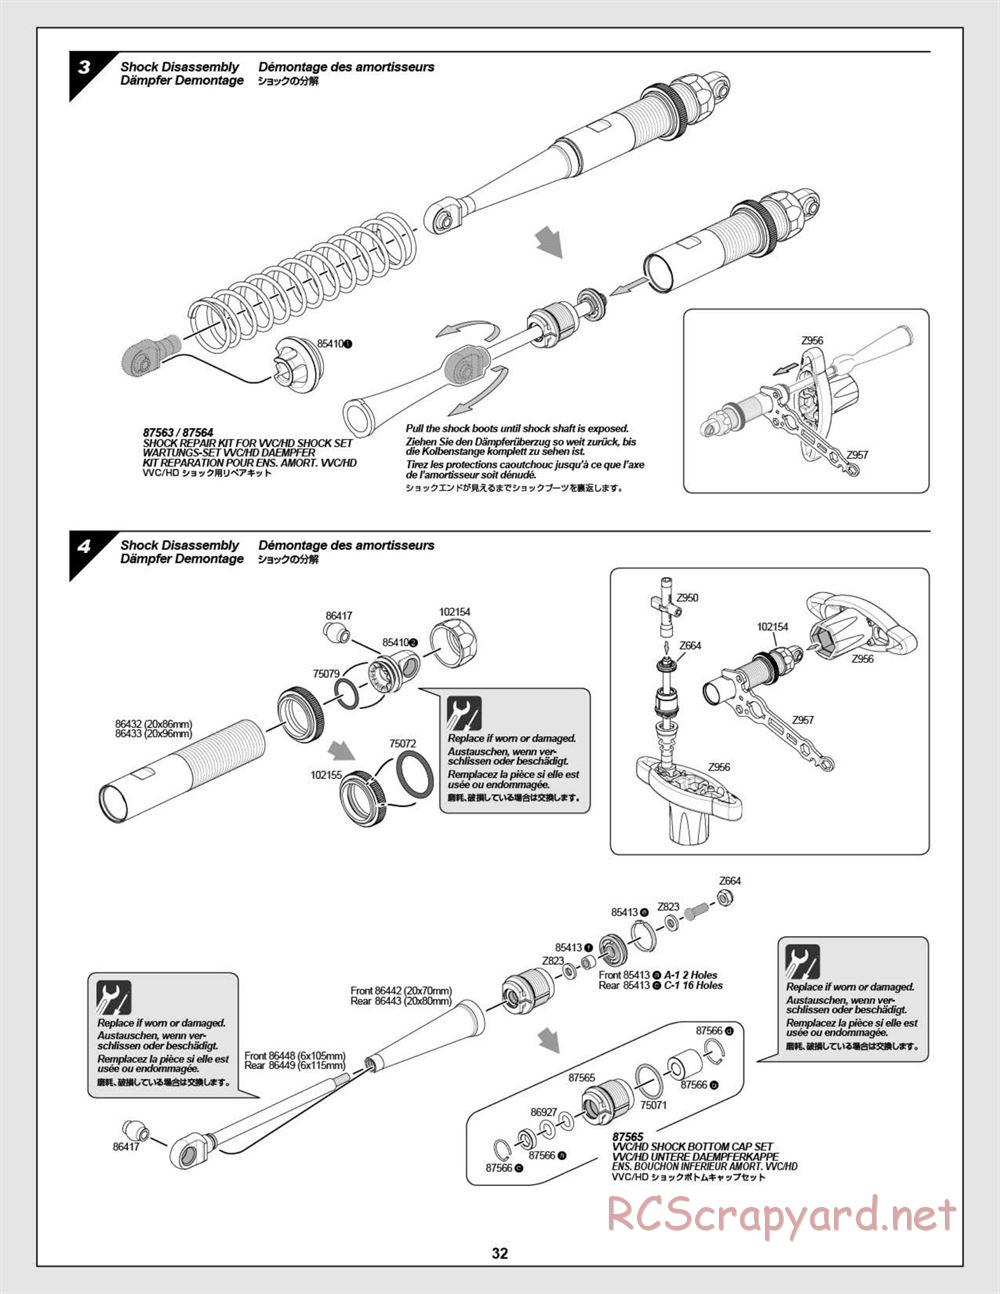 HPI - Baja 5B Flux Buggy - Manual - Page 32